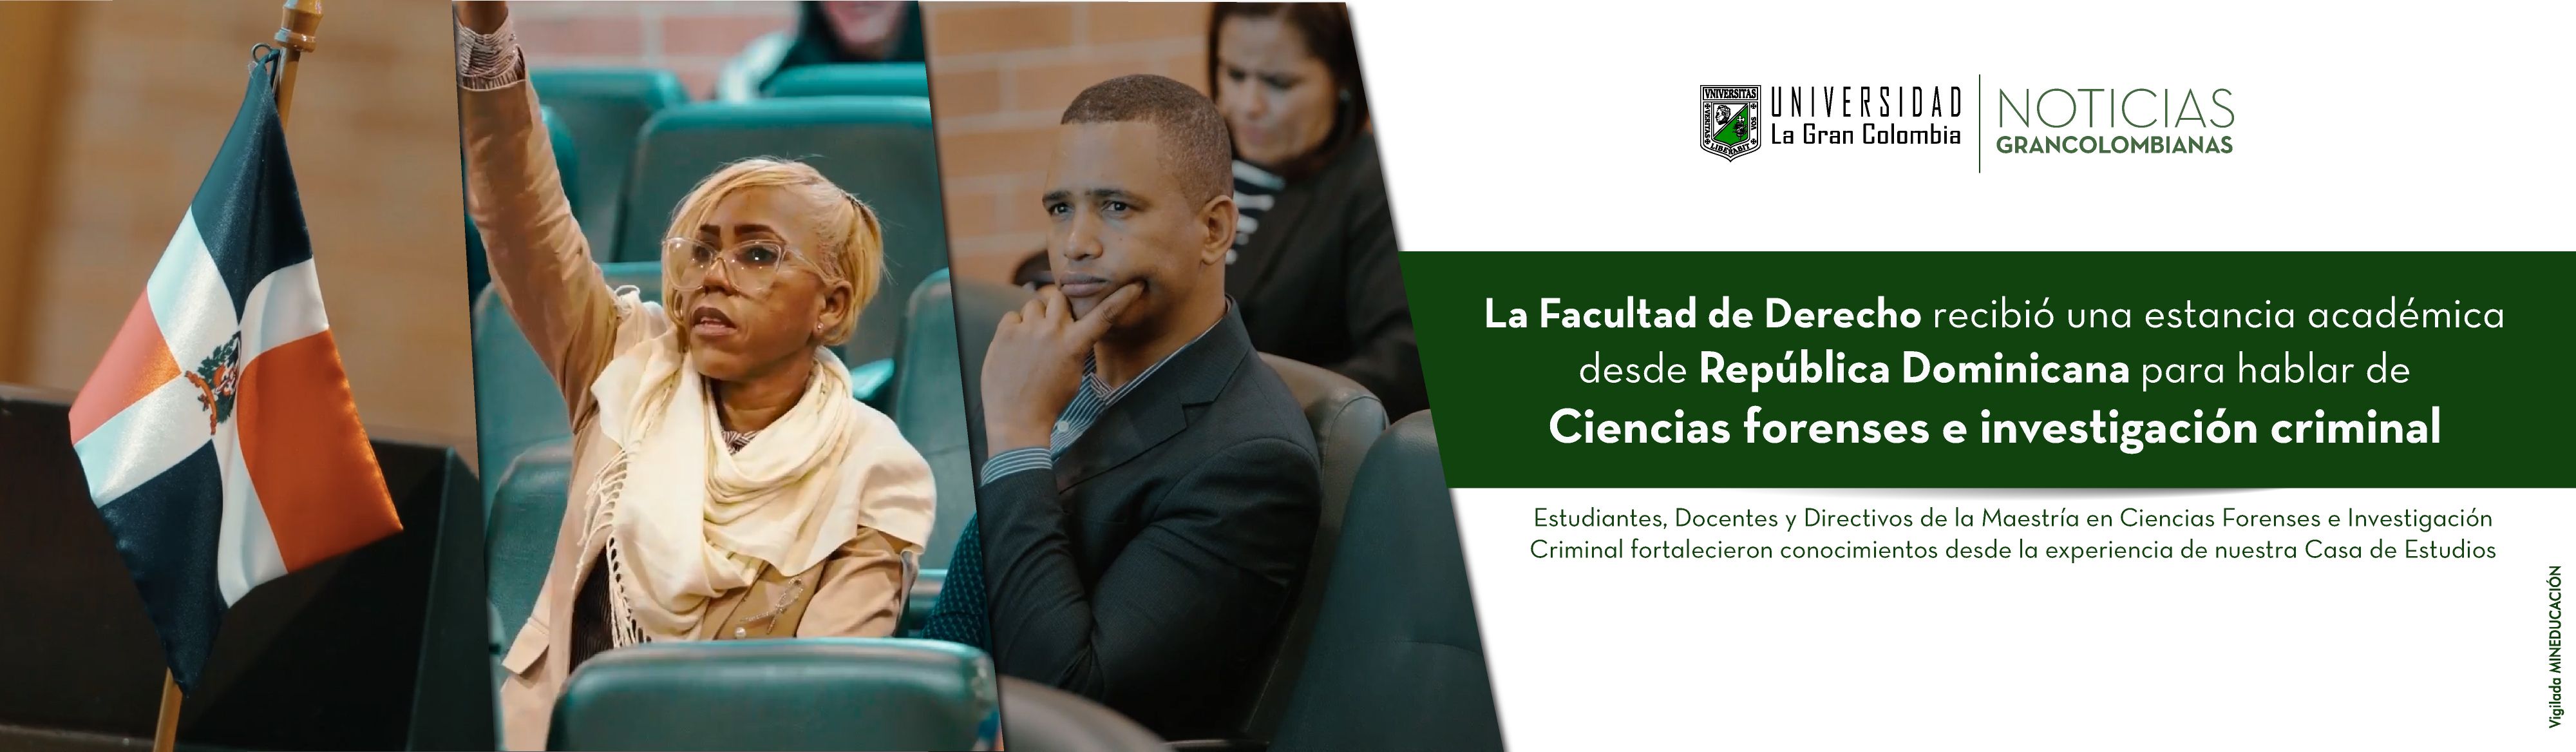 La Facultad de Derecho recibió una estancia académica desde República Dominicana para hablar de Ciencias forenses e investigación criminal